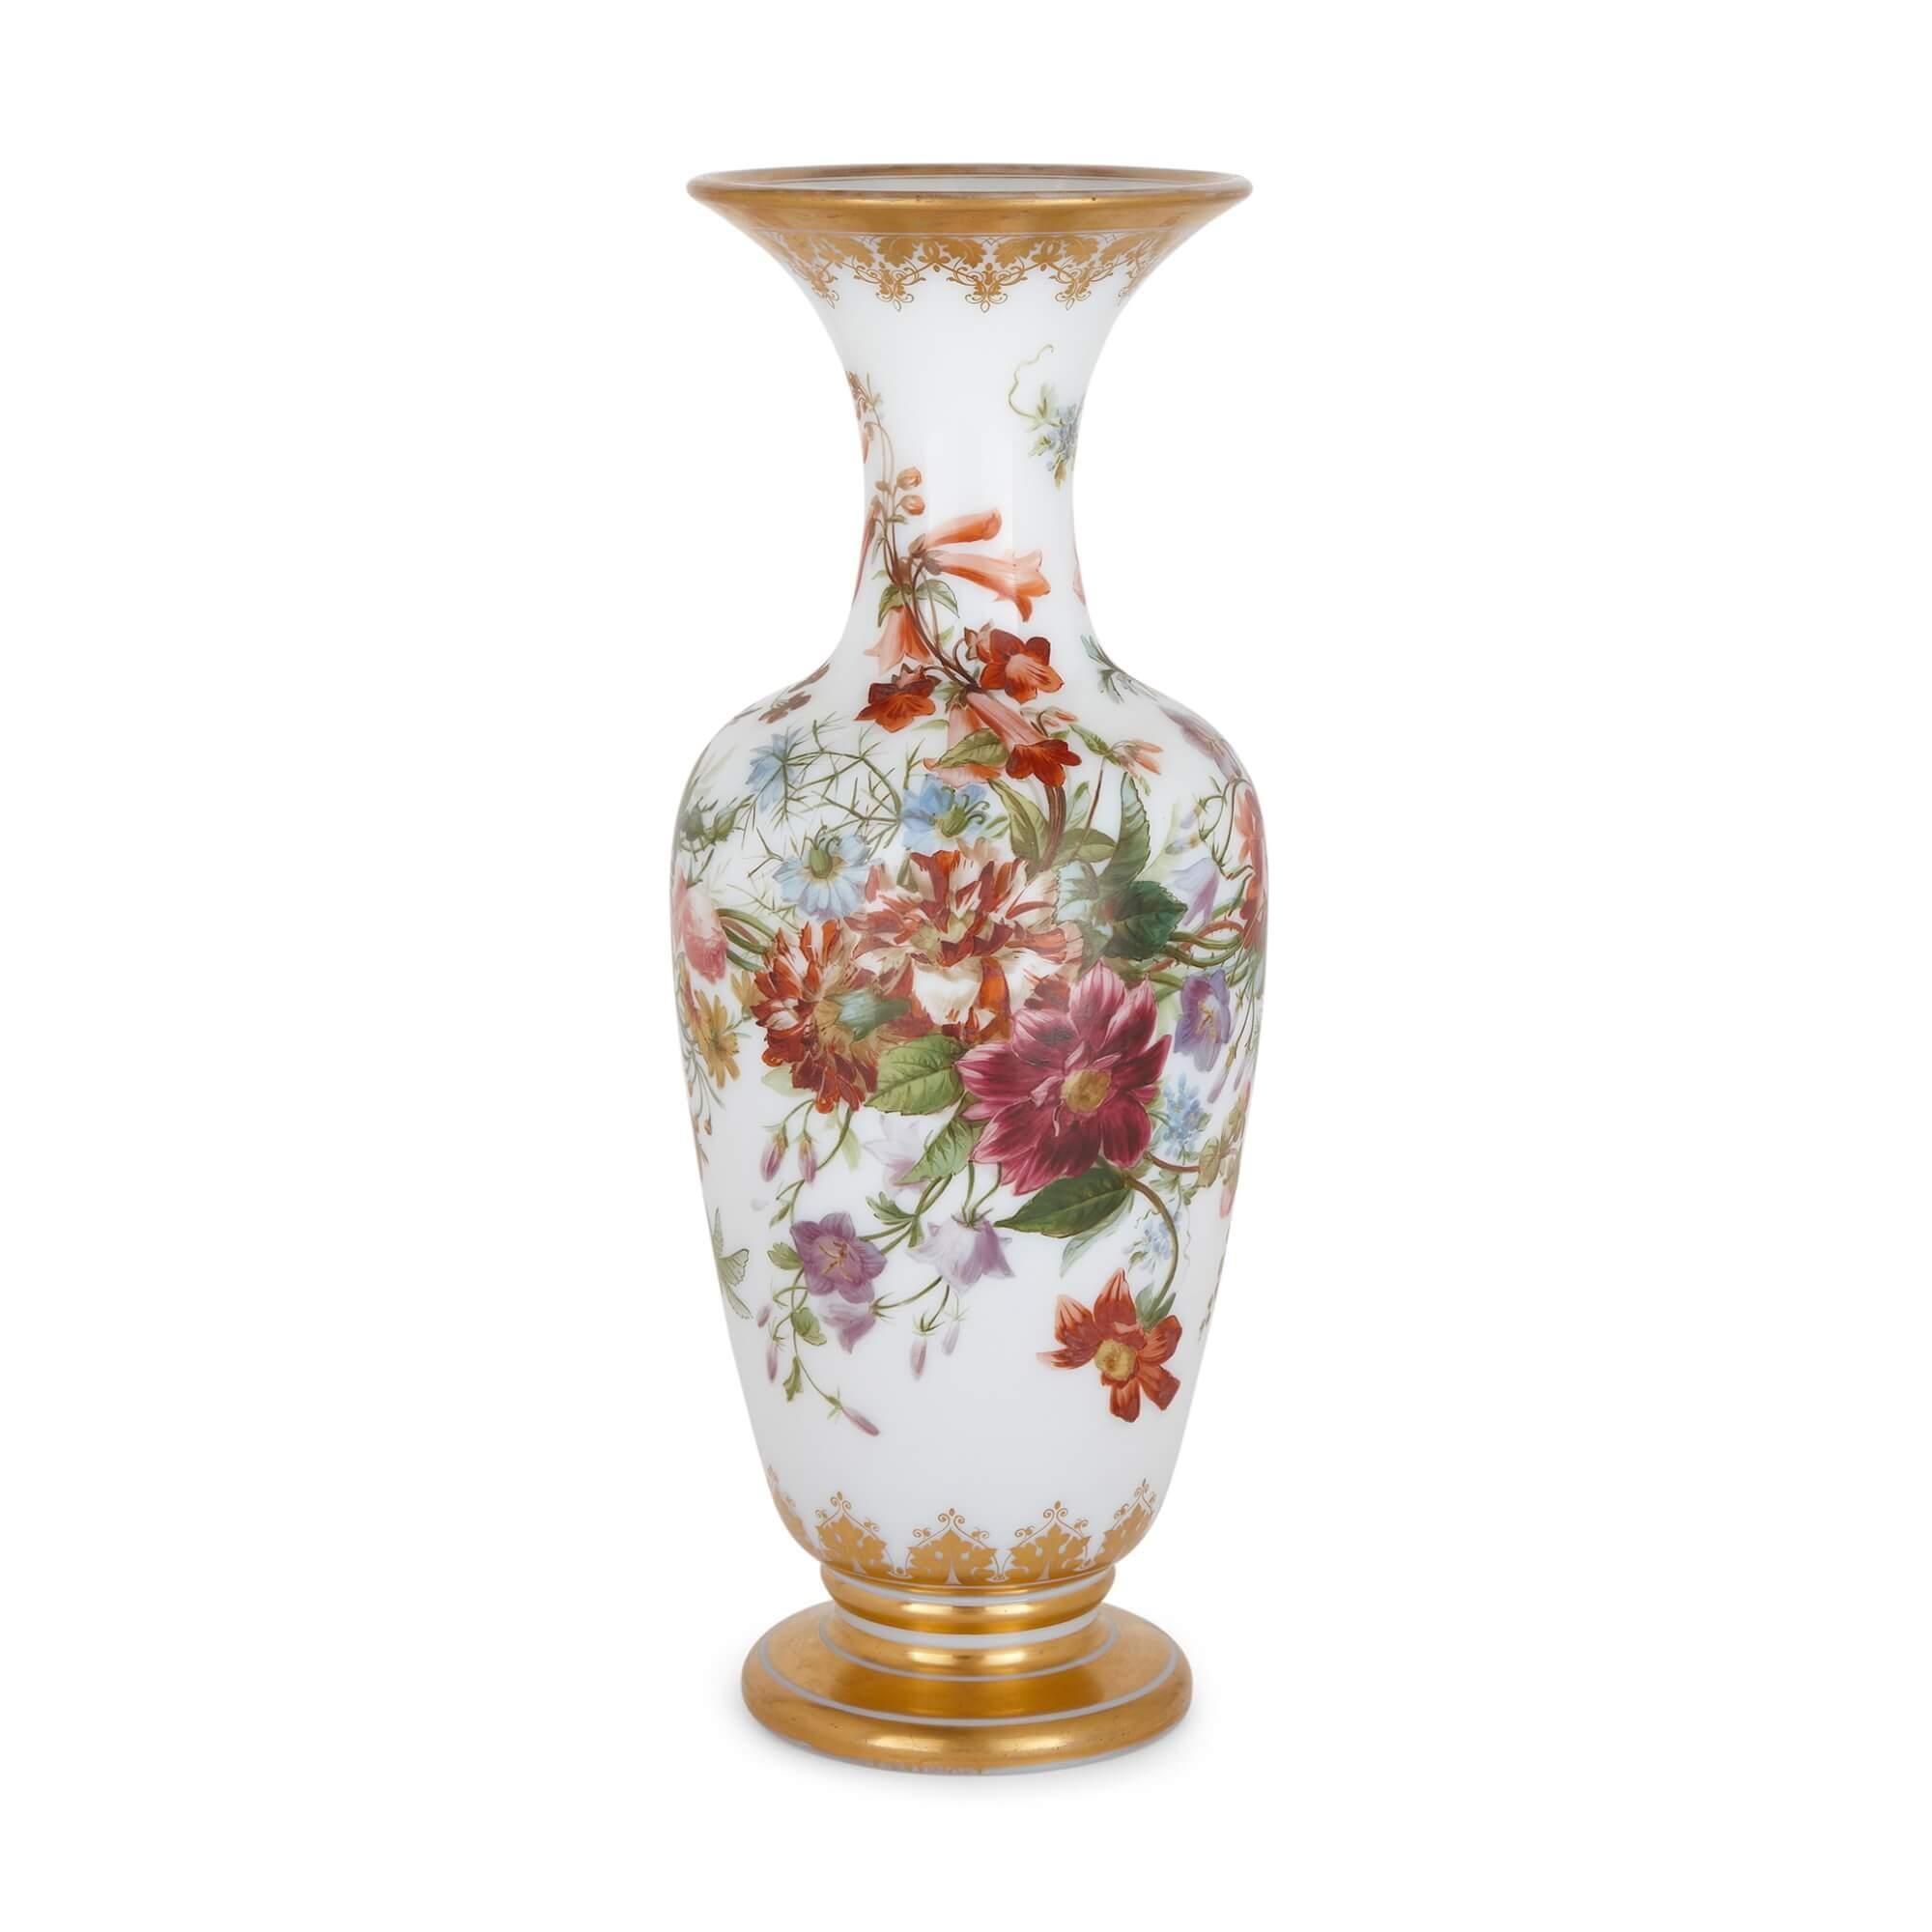 Antike Glasvase mit Blumenbemalung von Baccarat.
Französisch, 19. Jahrhundert.
Maße: Höhe 45 cm, Durchmesser 18 cm.

Diese wunderschöne Vase der renommierten französischen Manufaktur Baccarat ist aus Glas gefertigt und mit wunderschön